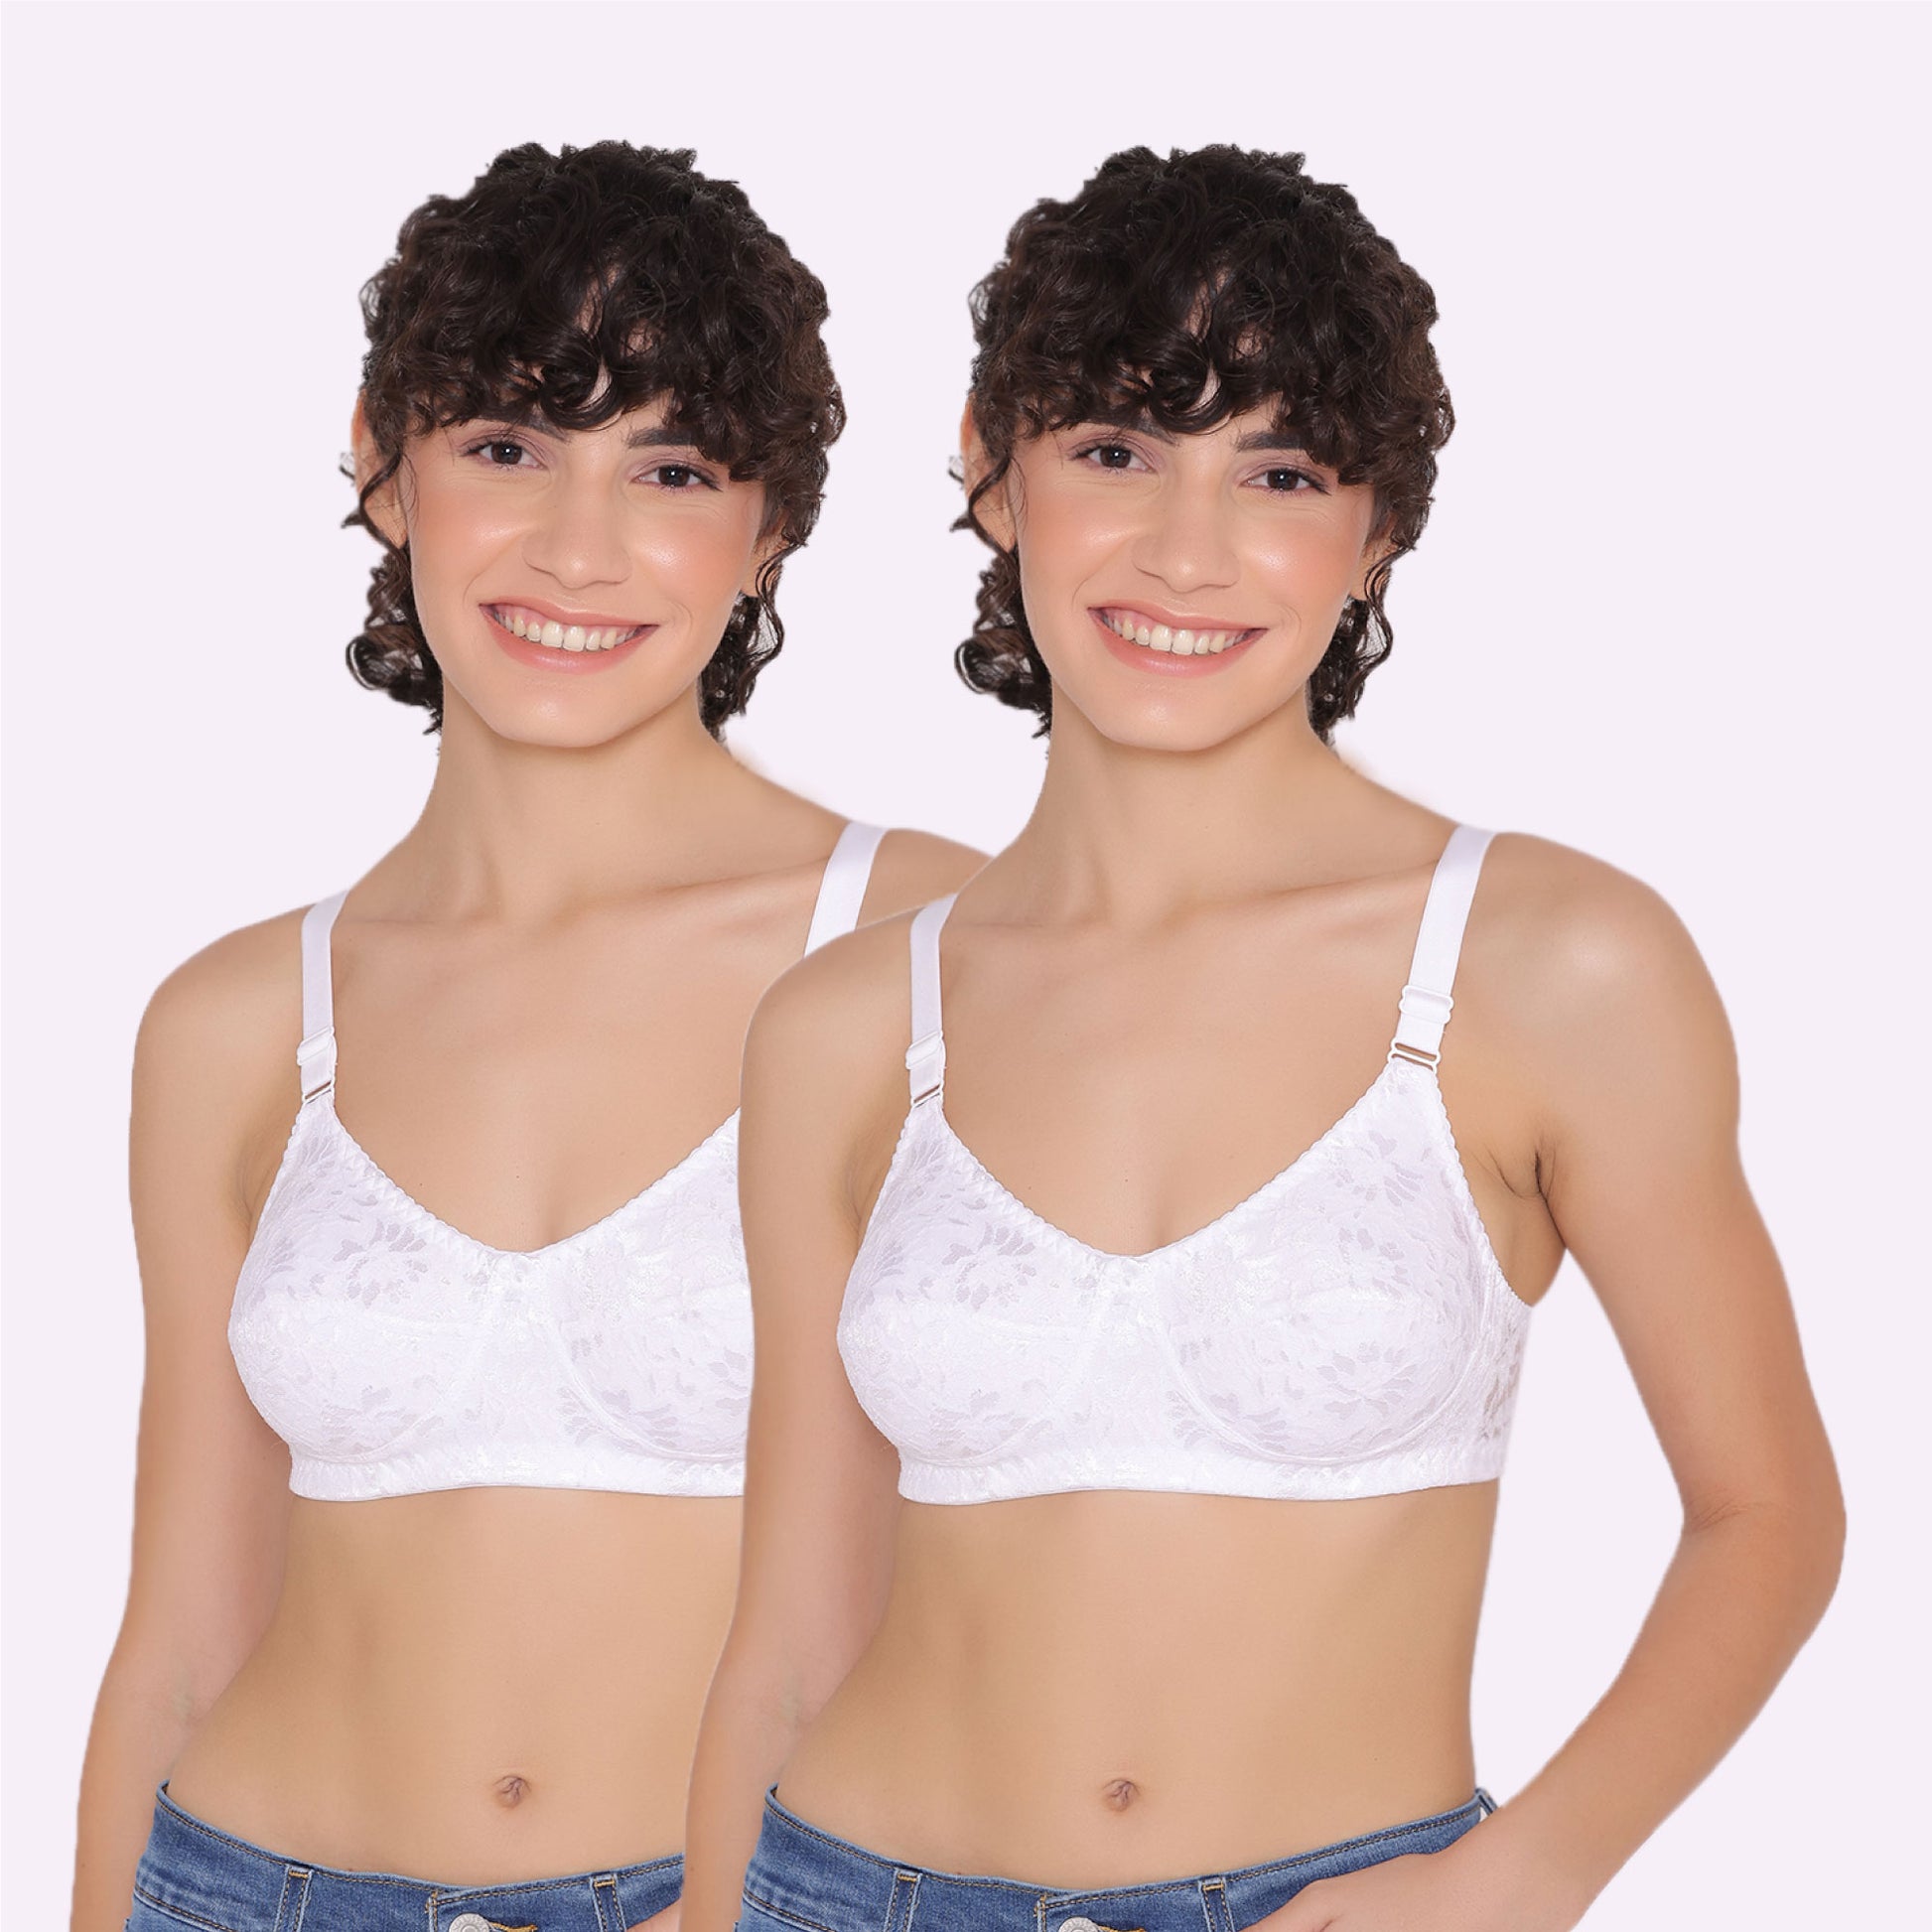 Buy Full Coverage Bras for Women online at Inkurv Online Store